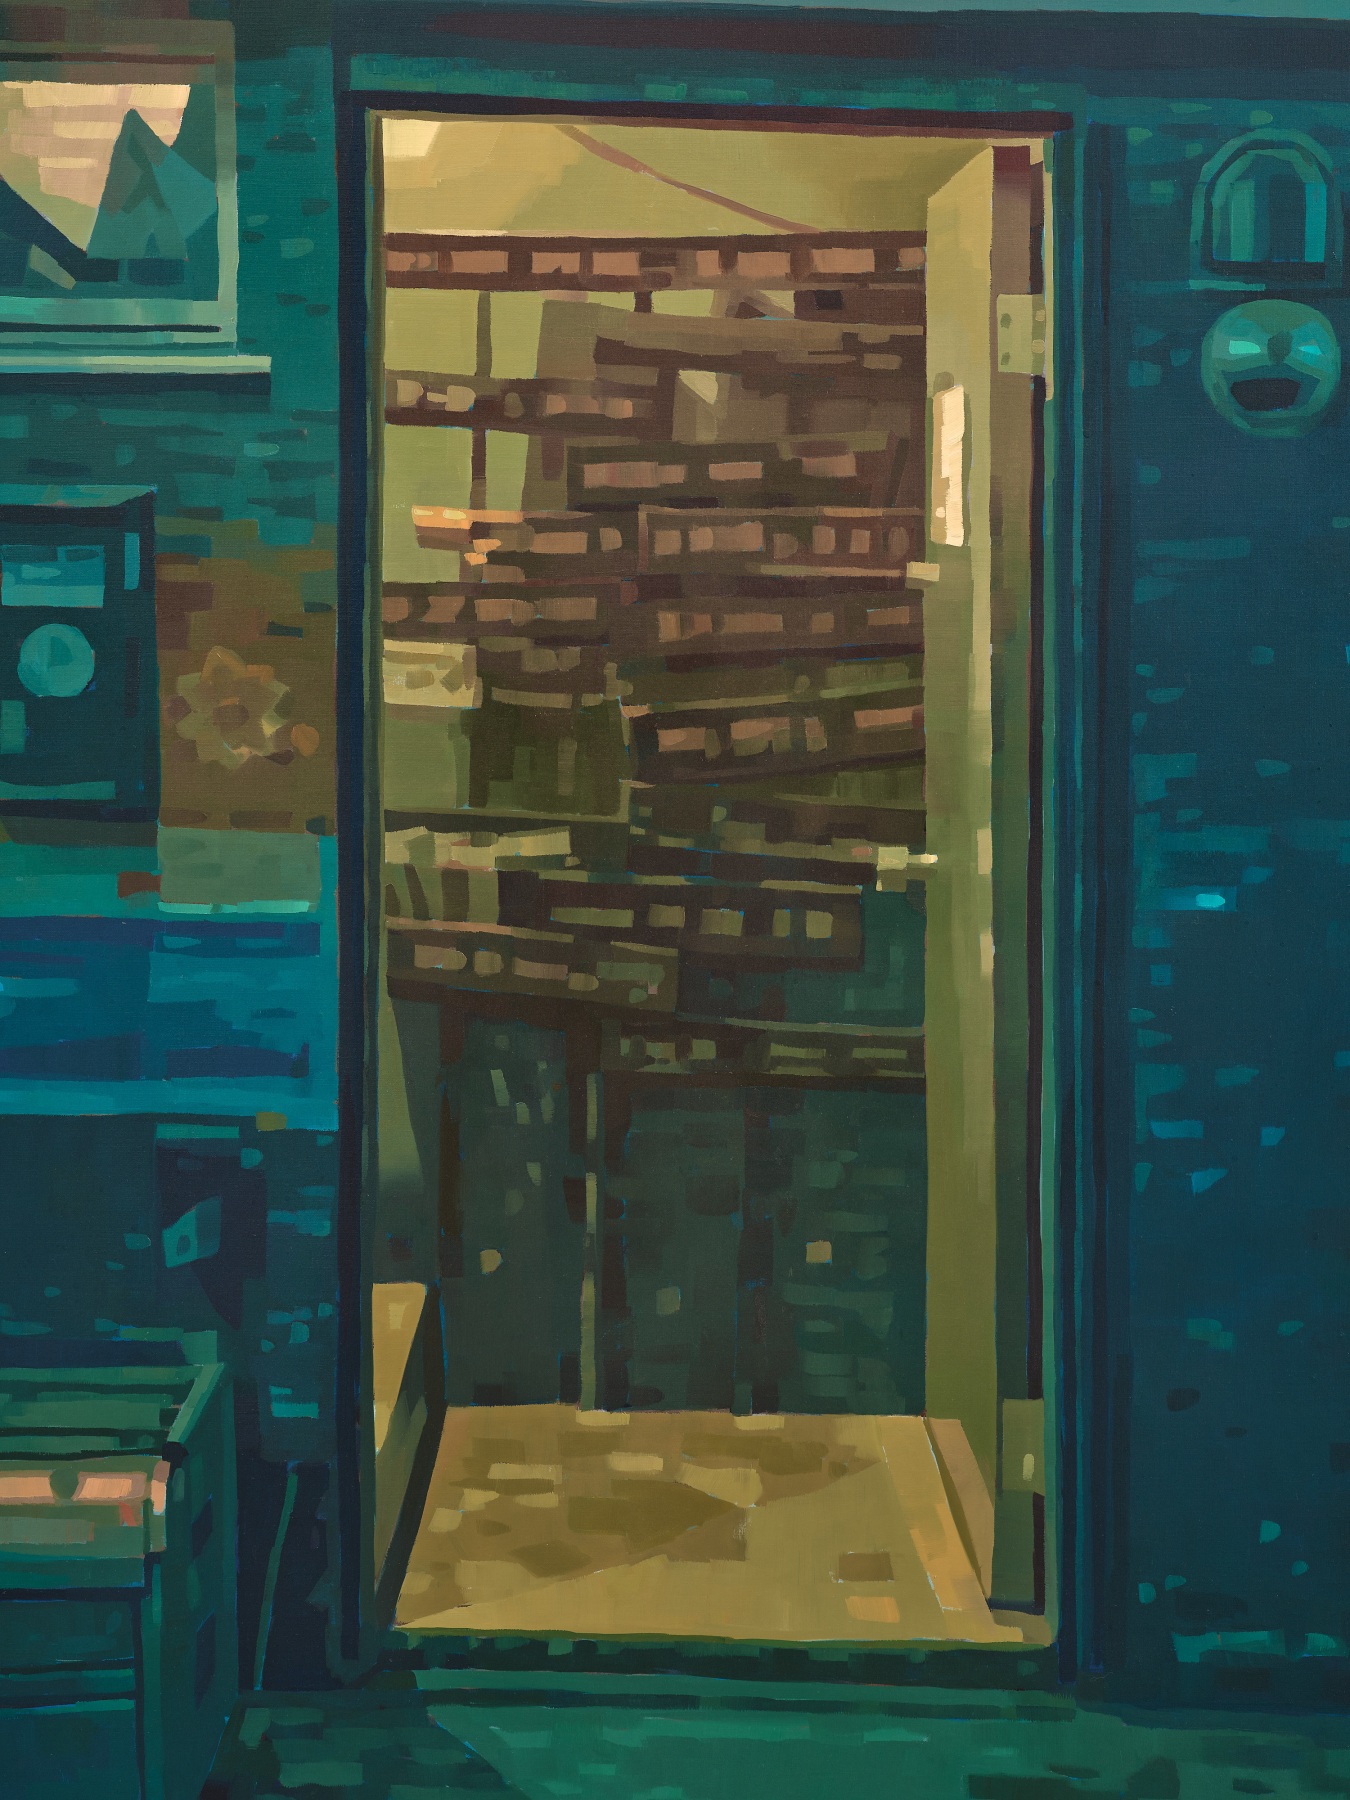 Detail of an open shop door in Keita Morioto's "In Trouble".